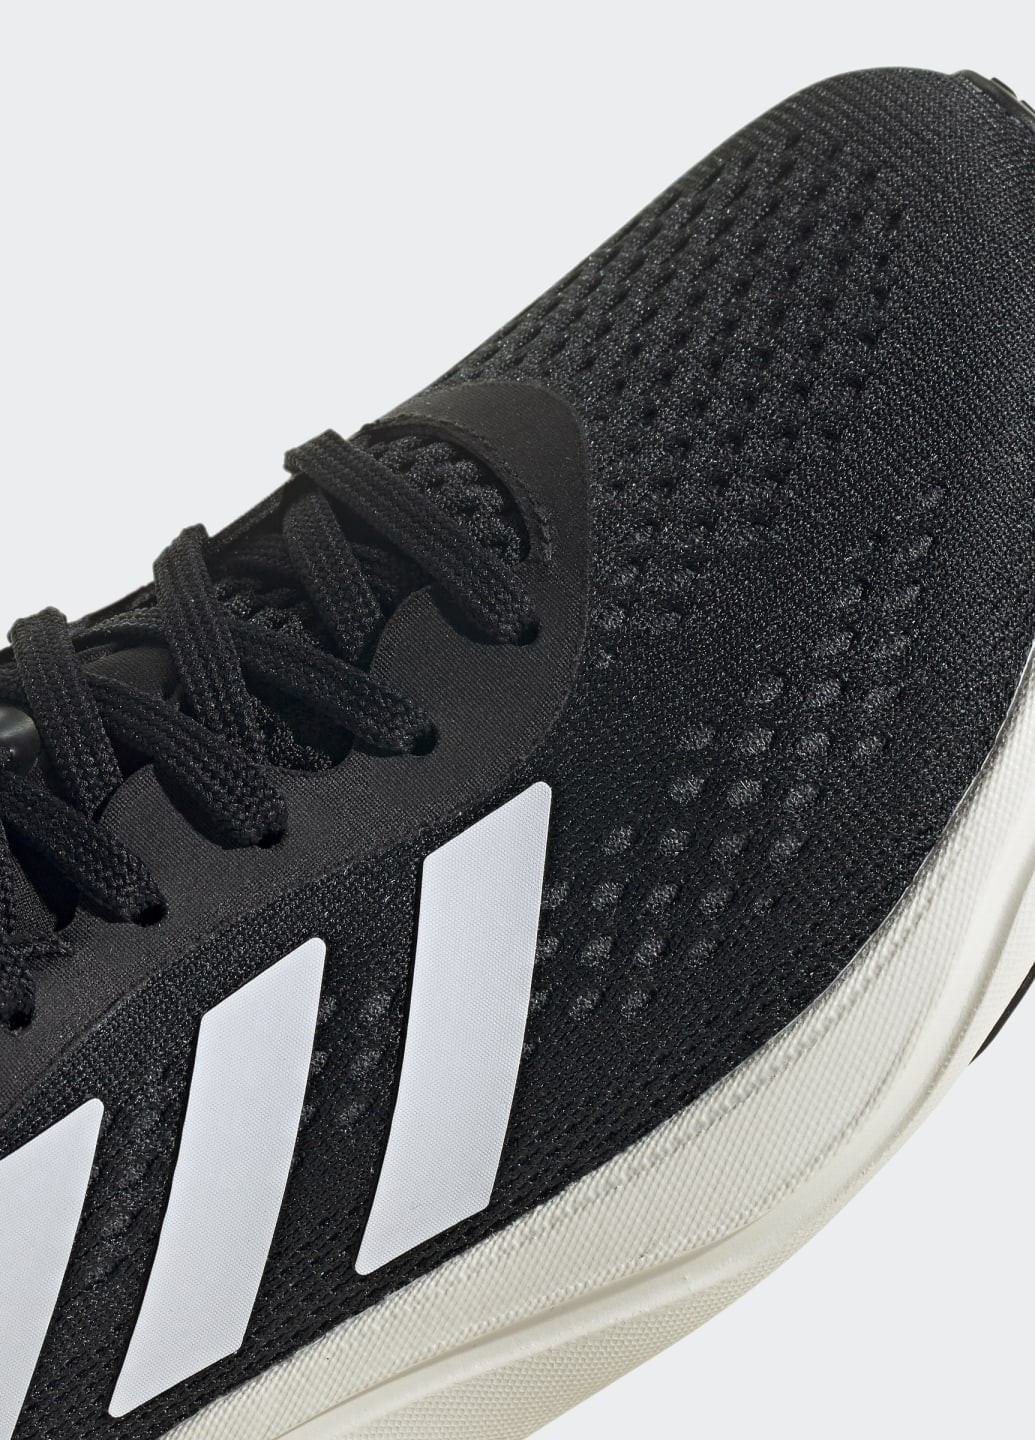 Черные всесезонные кроссовки для бега supernova 2.0 adidas